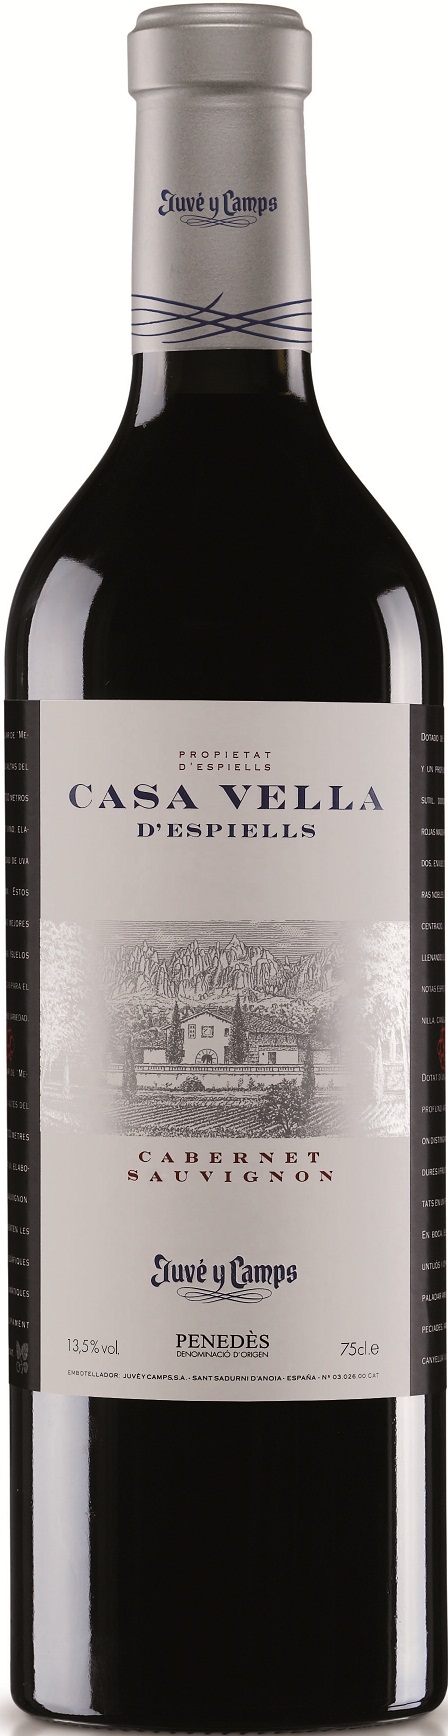 Bild von der Weinflasche Casa Vella d'Espiells